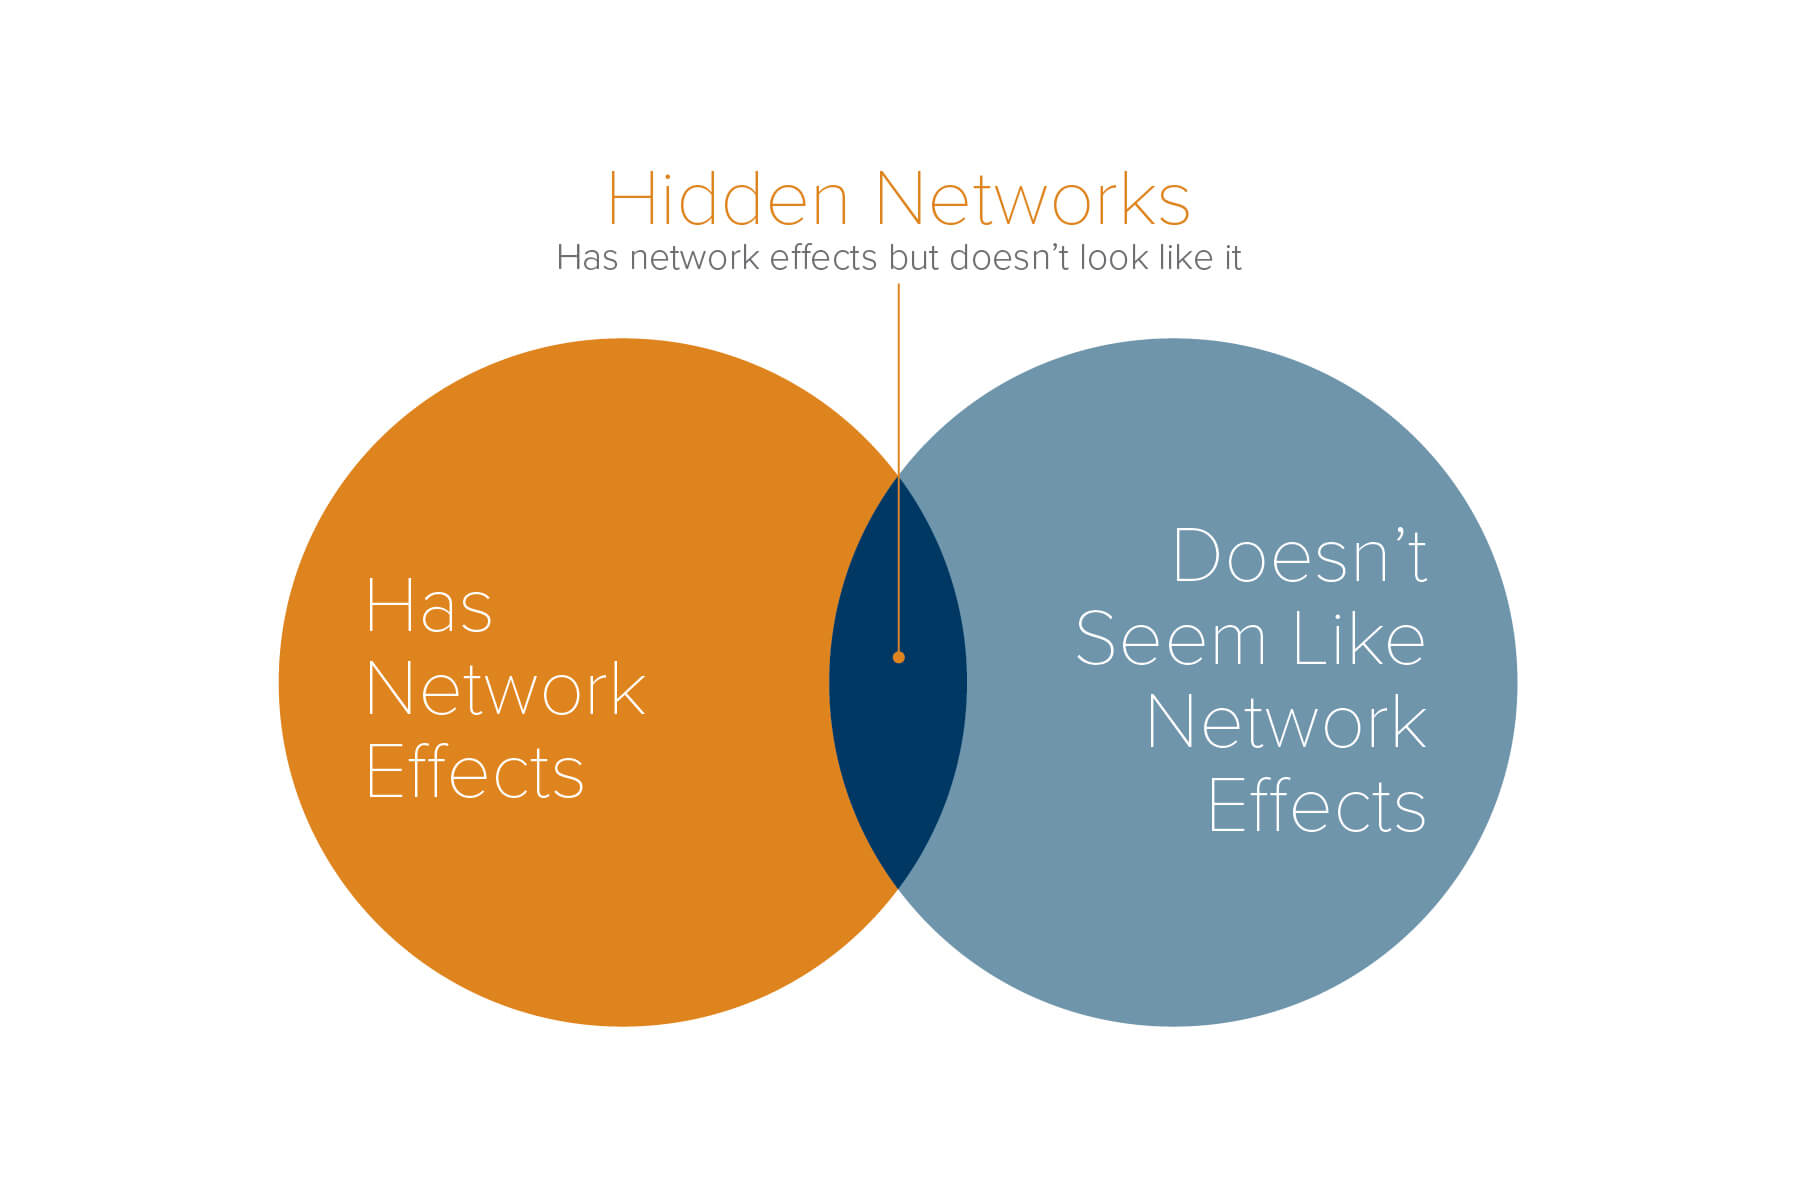 Hidden networks